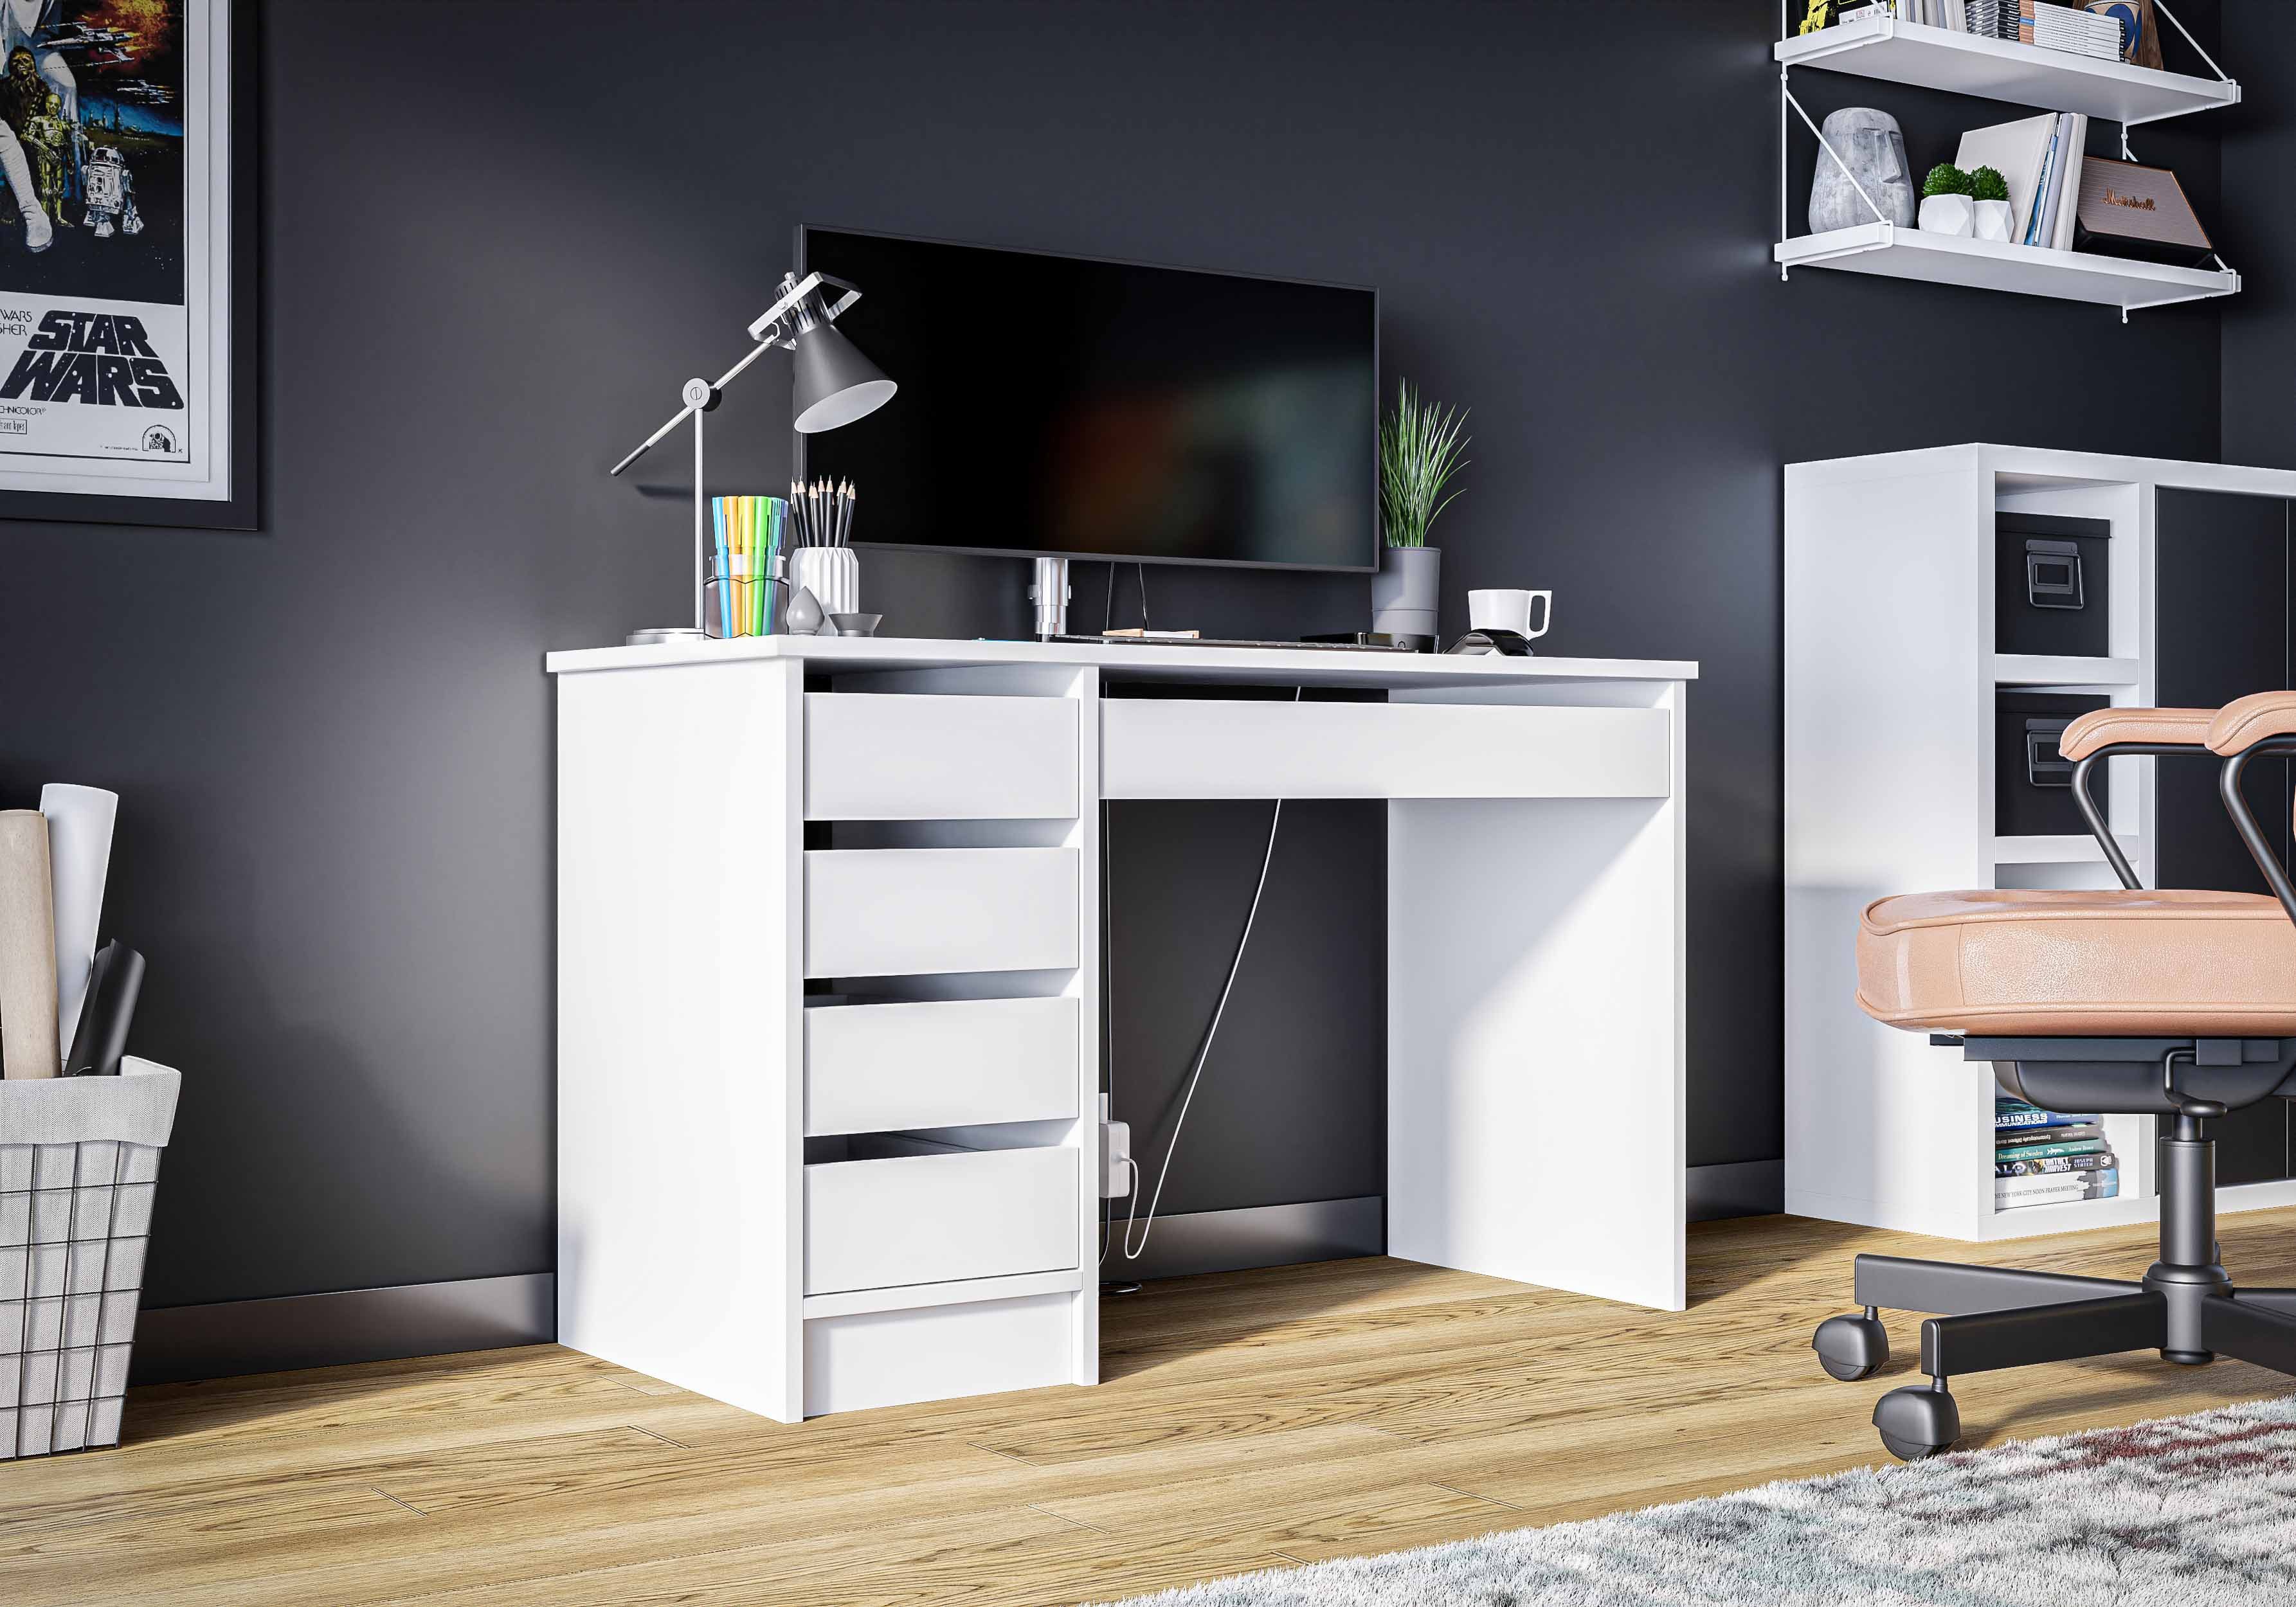 Furnix Schreibtisch Oficello Neu moderner Arbeitsplatz mit 5 Schubladen Weiß matt, Maße BxHxT 120x75x55 cm, pflegeleichte Oberflächen